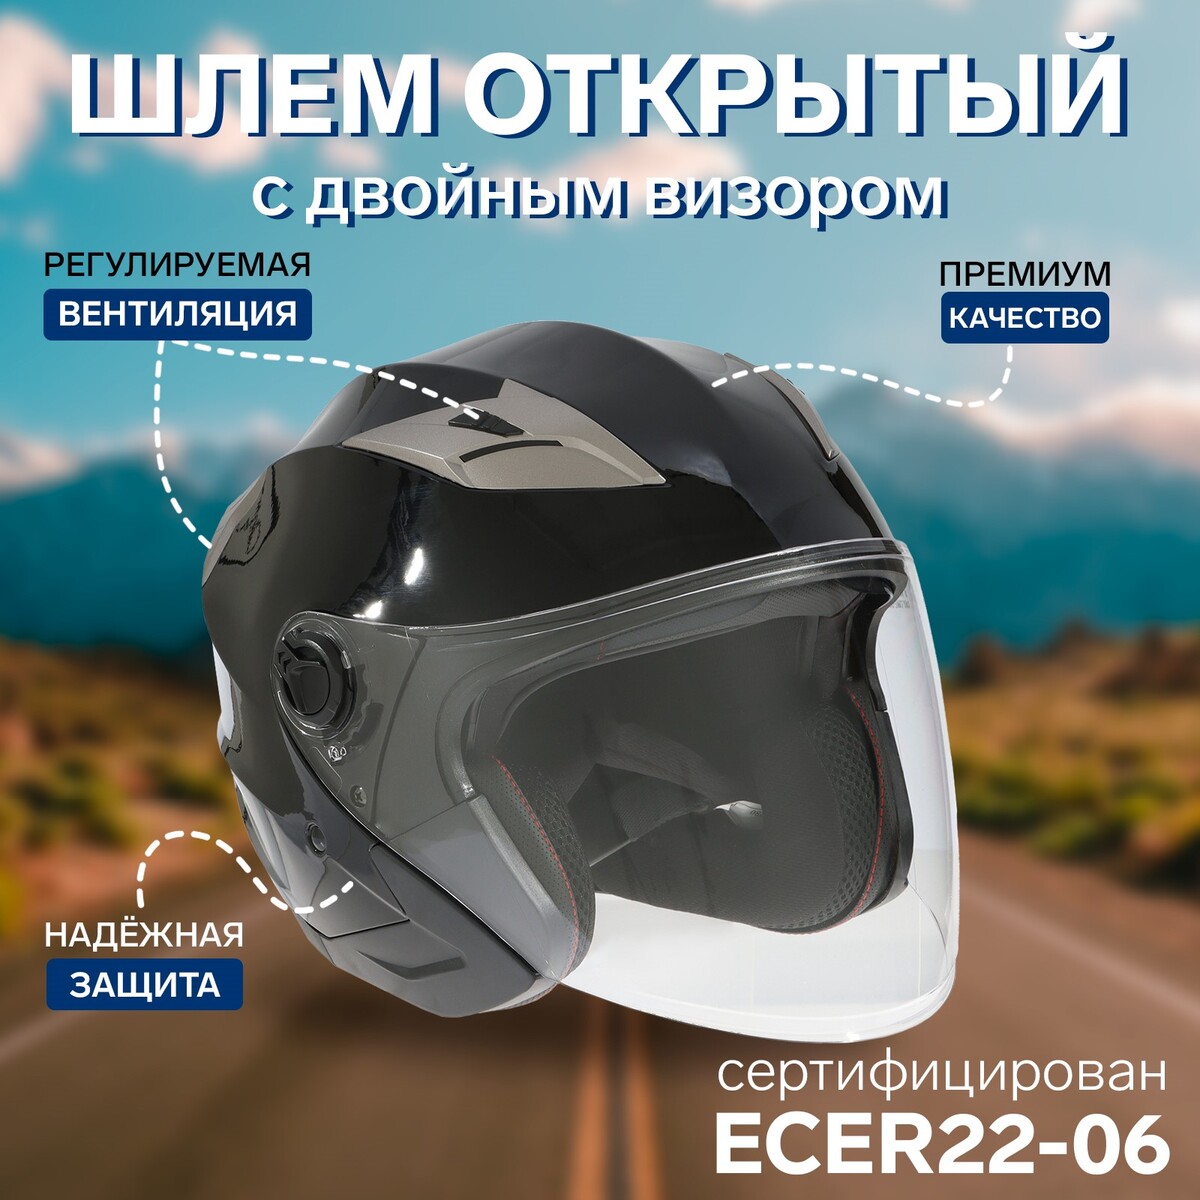 Шлем открытый с двумя визорами, размер l (59-60), модель - bld-708e, черный глянцевый